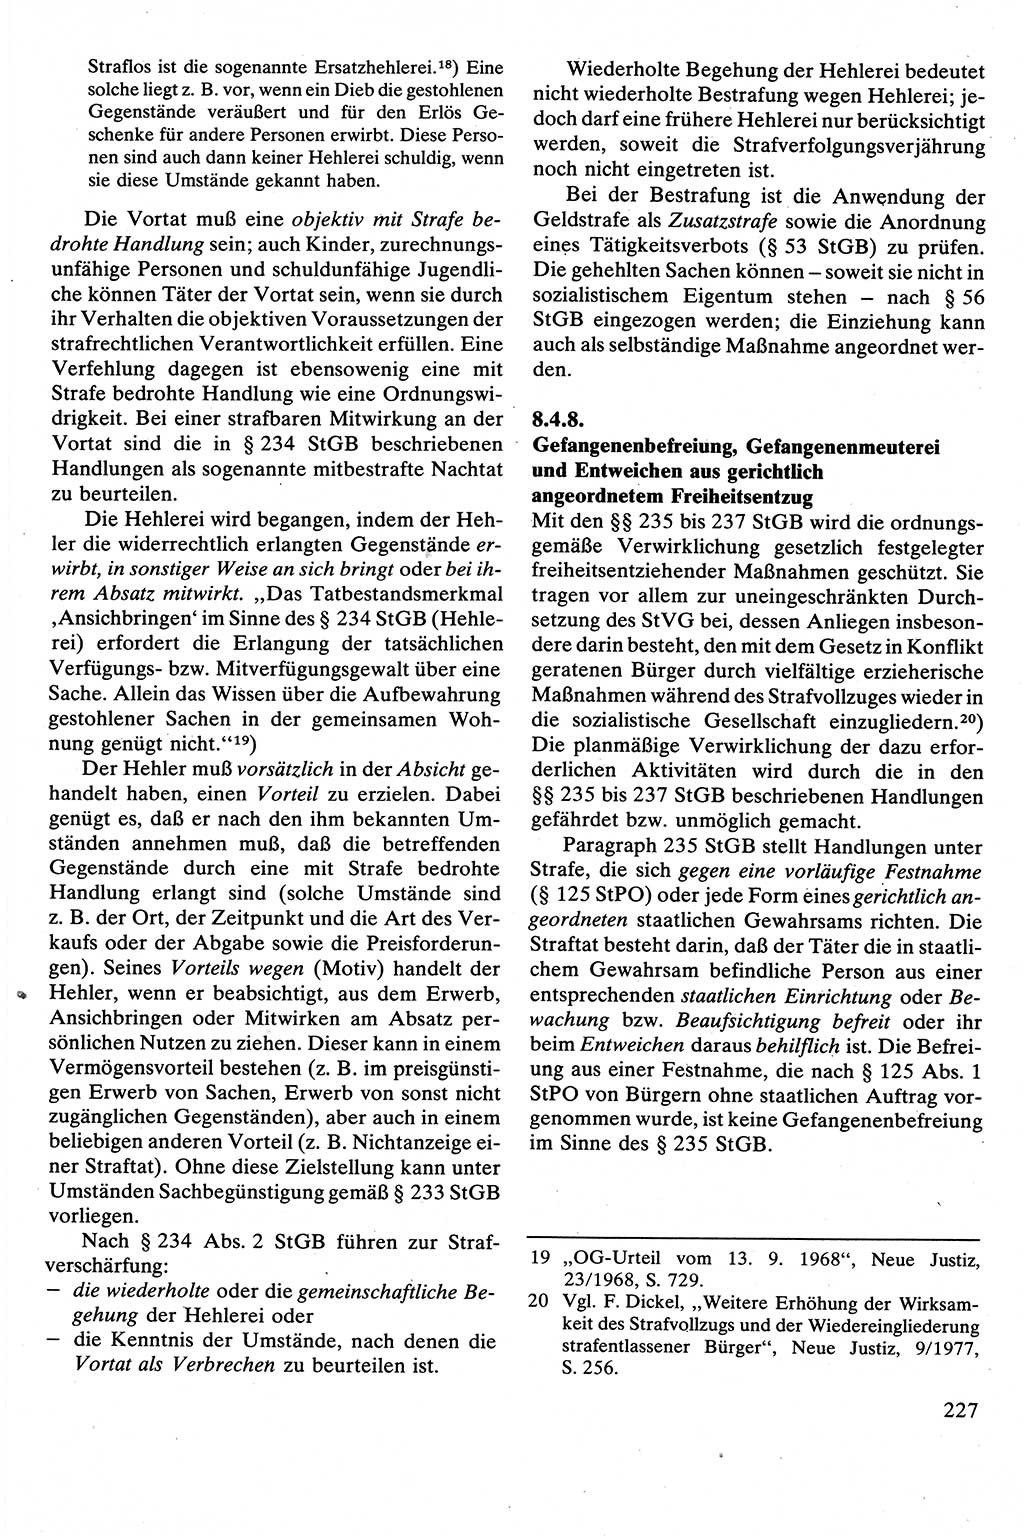 Strafrecht [Deutsche Demokratische Republik (DDR)], Besonderer Teil, Lehrbuch 1981, Seite 227 (Strafr. DDR BT Lb. 1981, S. 227)